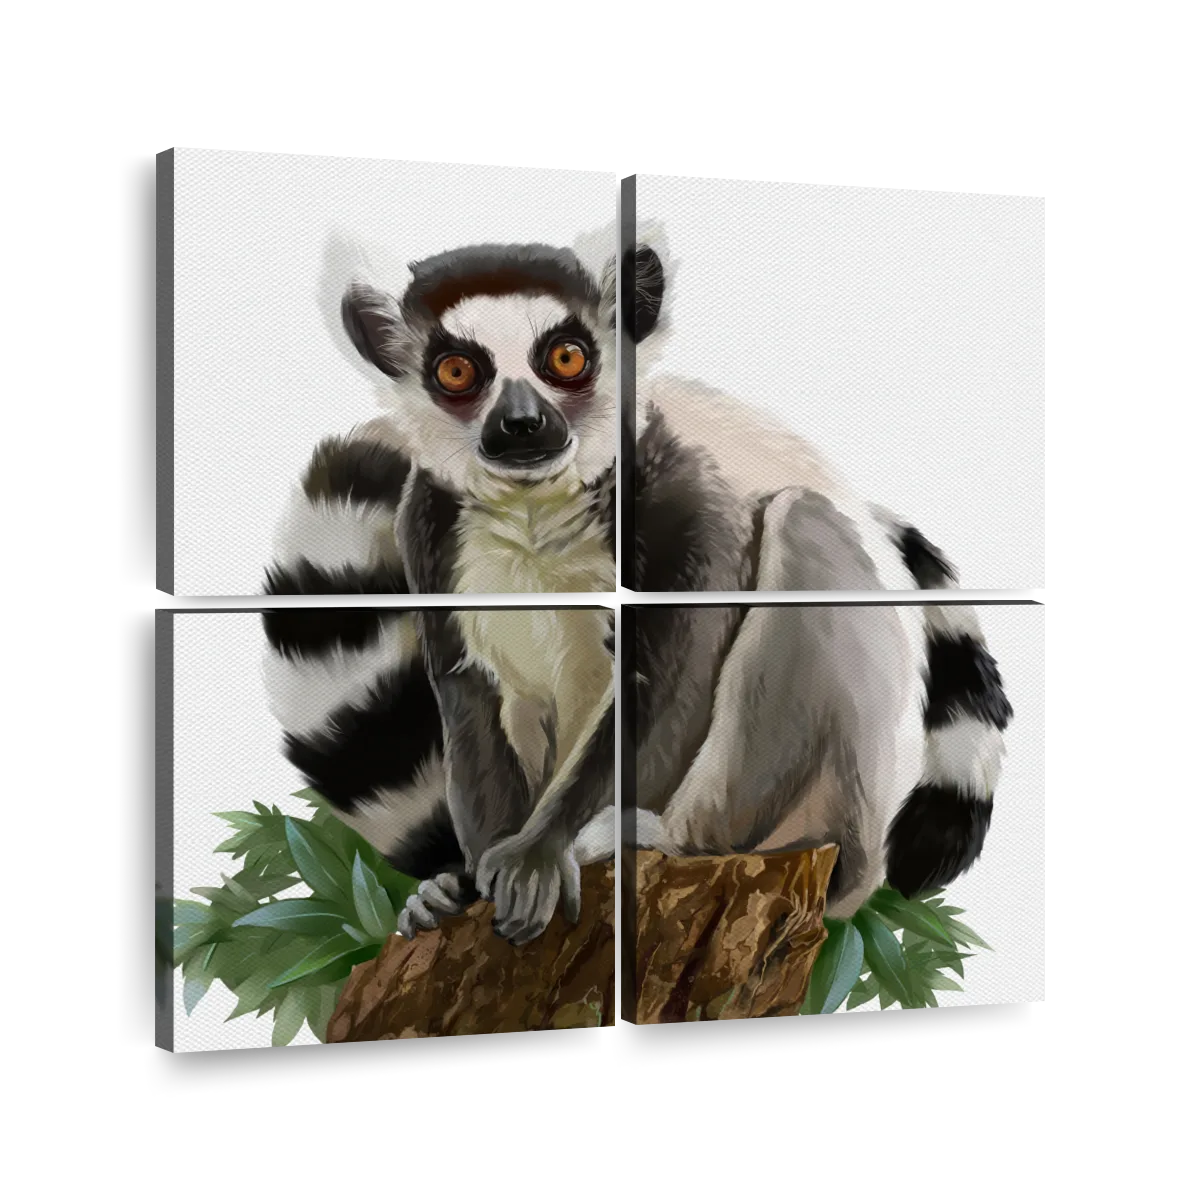 Ring Tailed Lemur Animal Diamond Painting 